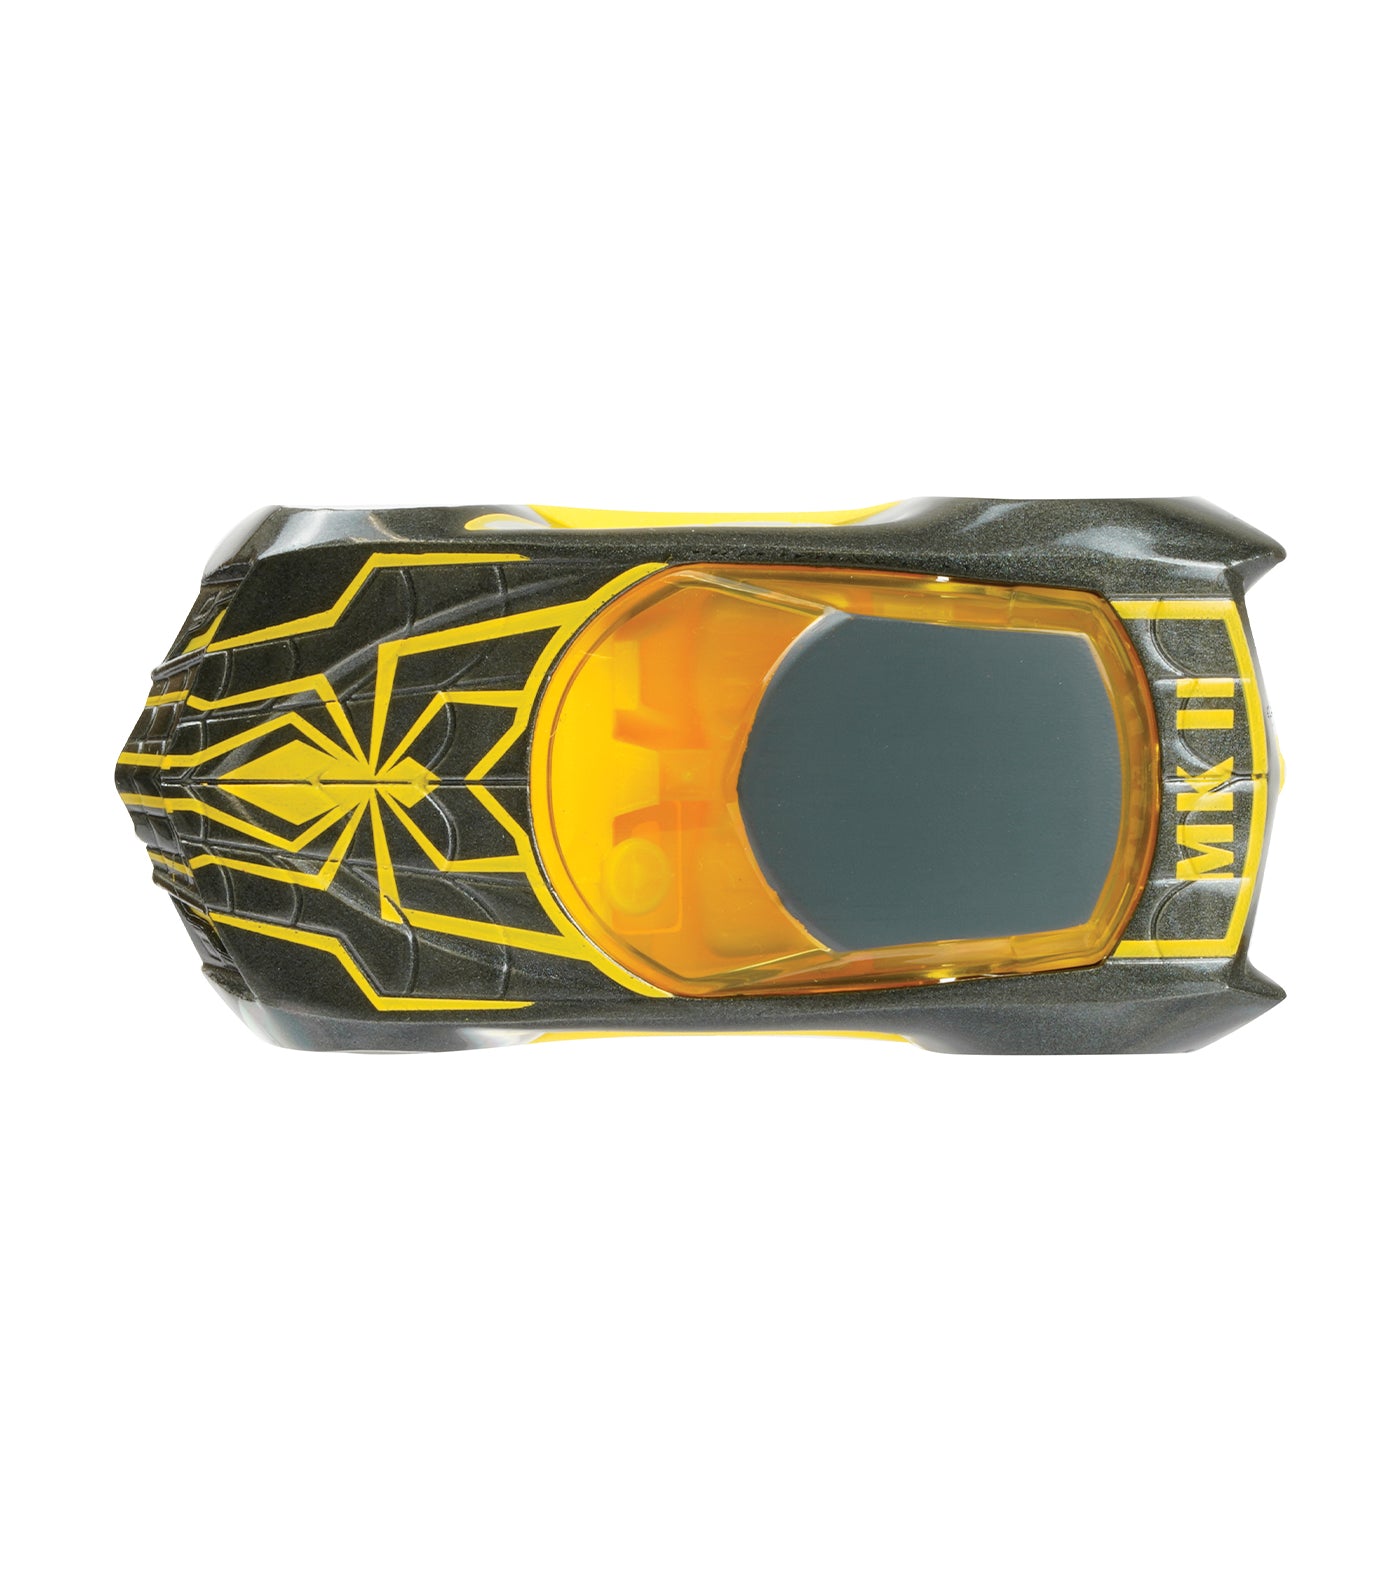 Racing Spider Armor II